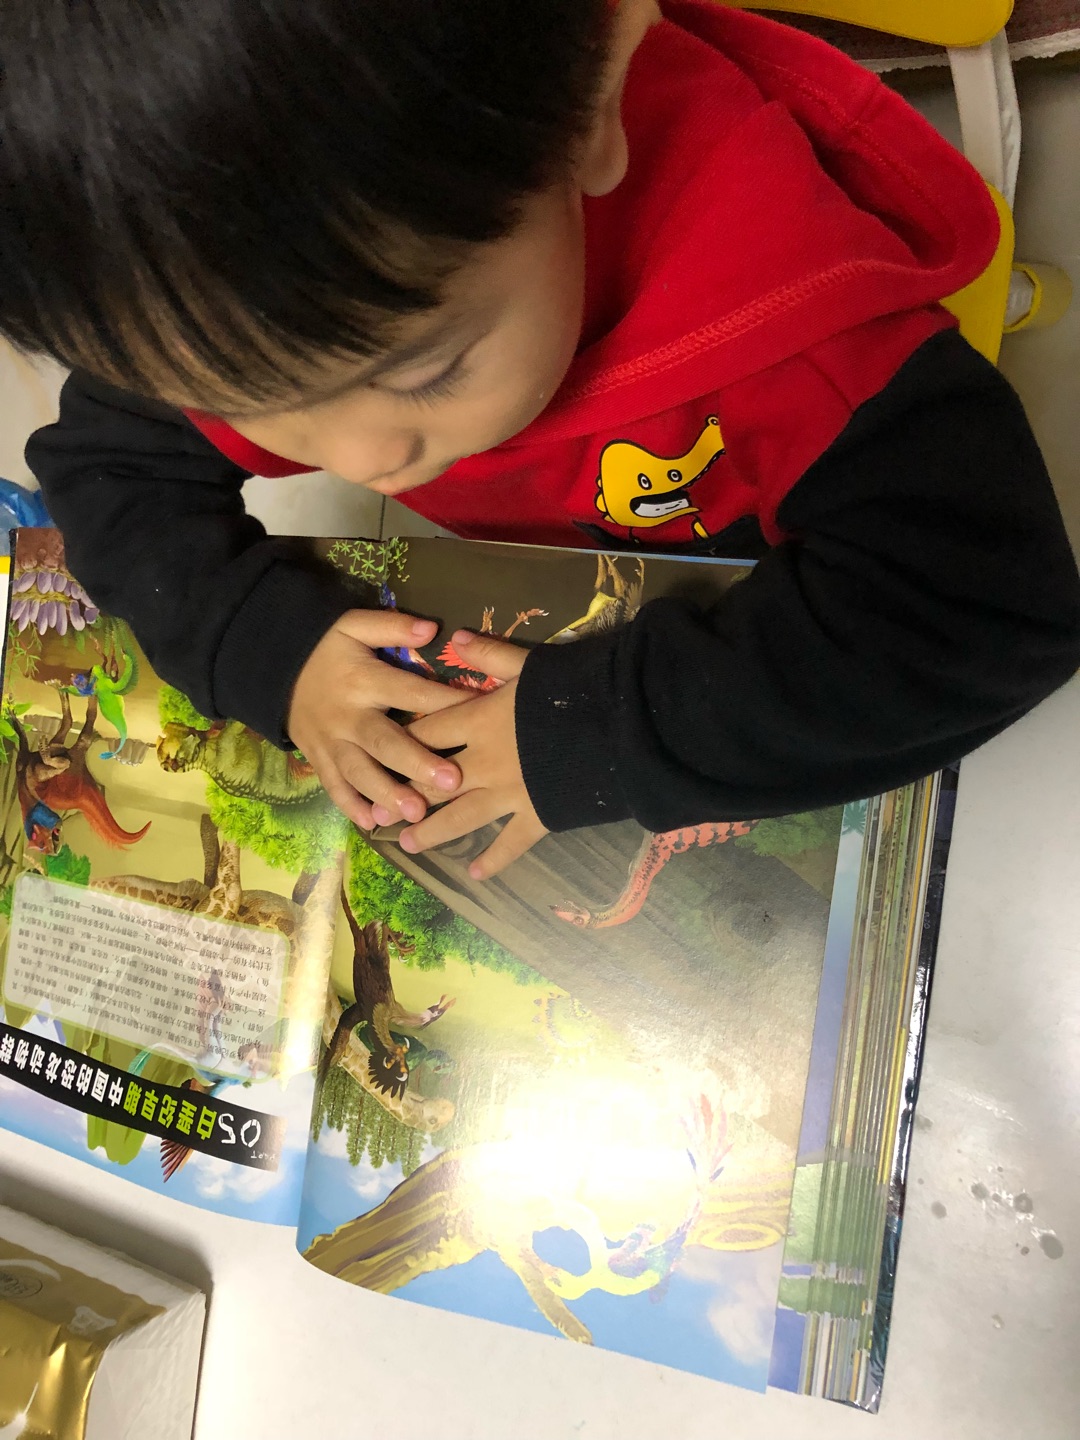 和宝宝一起阅读了《中国恐龙百科全书》，书本推荐阅读年龄7岁以上，我们年龄略小一些，但也不影响小恐龙迷的阅读兴趣。书中文字叙述不少，知识点丰富，对于低幼的我们来说有难度，家长可以简略阐述，通过大幅面的恐龙图像进行即兴讲解。这本书是以时间为主线，按五个不同时期铺开，详细介绍了曾经生活在我国的160多种恐龙，纵观全书，俨然一本字典类工具用书。书本不仅限于恐龙知识的介绍，也穿插了许多古生物学知识，横向知识扩展，让宝宝阅读的趣味性更浓。同时，个人也很推荐成年人以一本百科类图书的定位来阅读此书，在我国恐龙生物记载方面可以说是内容详实，全面，有一定的系统性，穿插的古生物学知识更能满足成人的思考需求。总之，这是一本适读年龄跨度大的书籍，推荐大家阅读。